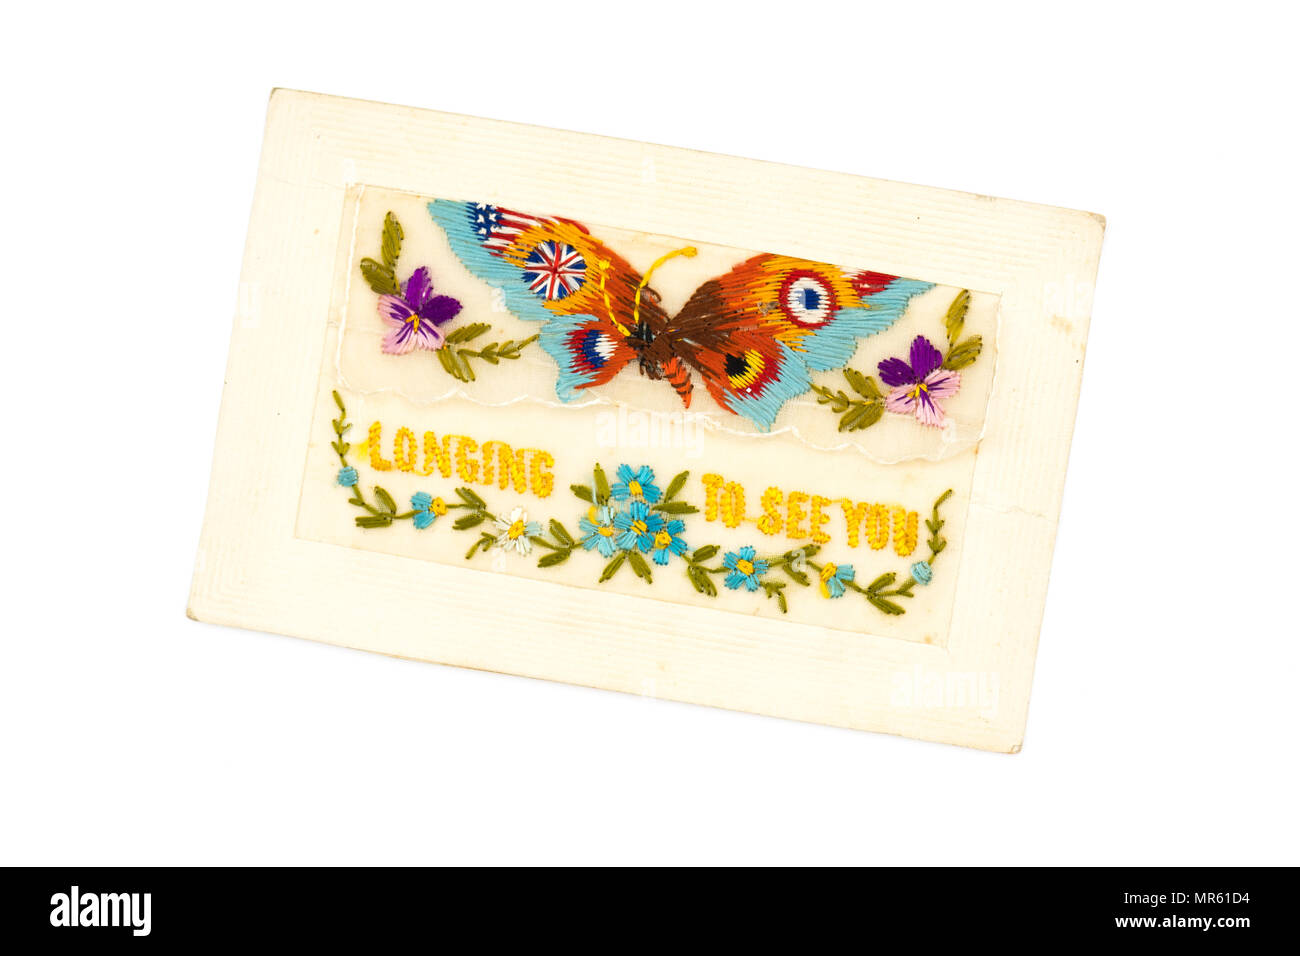 Première Guerre mondiale carte postale de soie brodée main 'envie de vous voir" - voir l'image MR61FC pour le message écrit au dos Banque D'Images